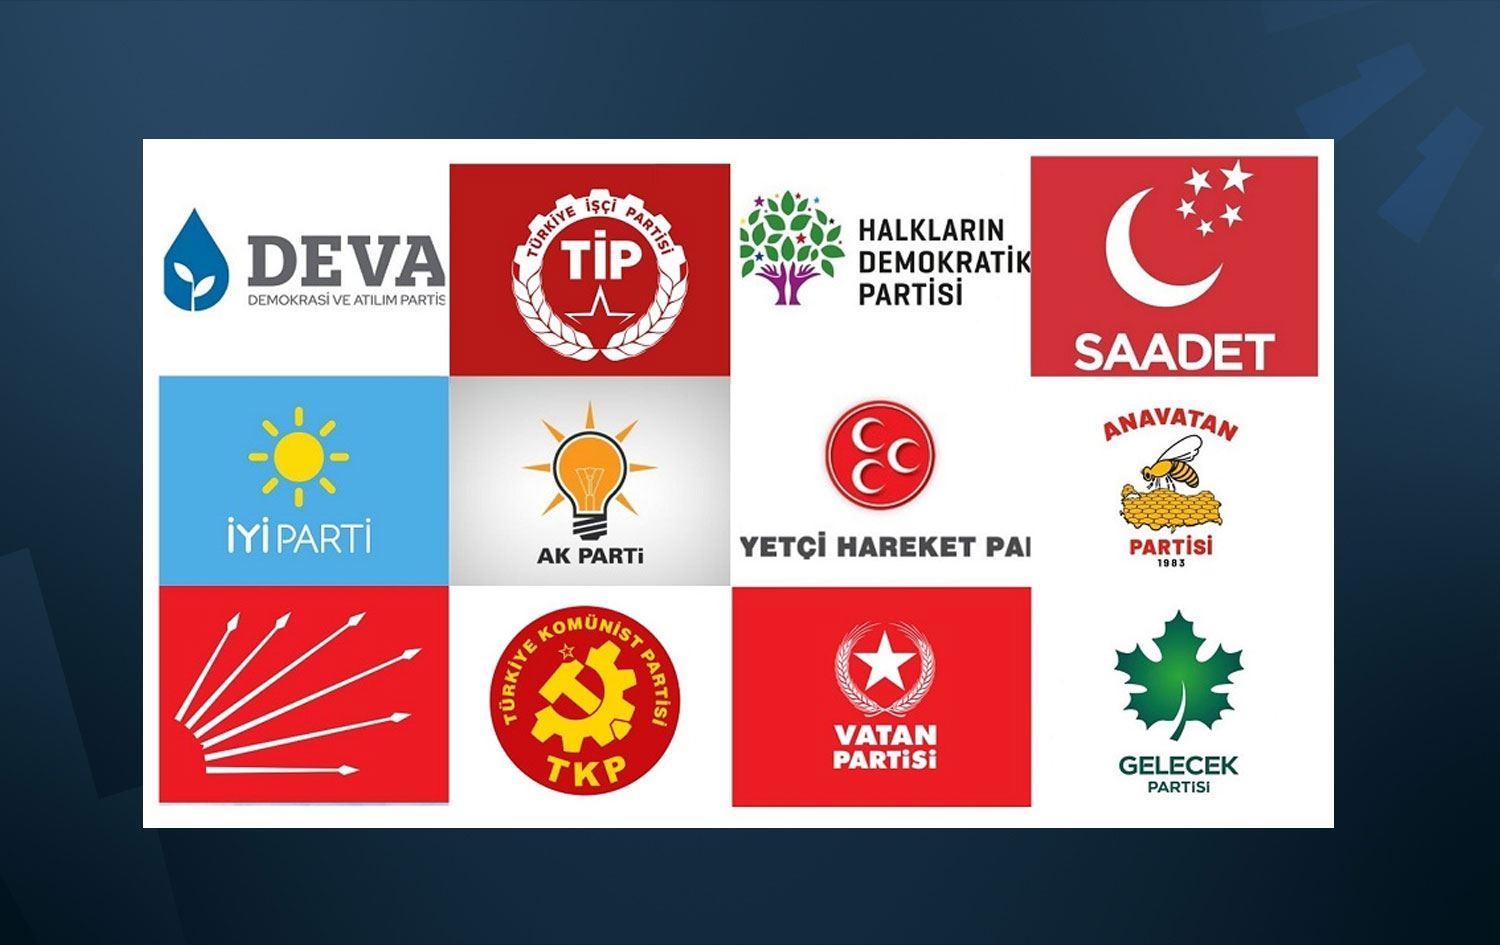 YSK seçime girecek 36 partinin ismini açıkladı! | Rudaw.net